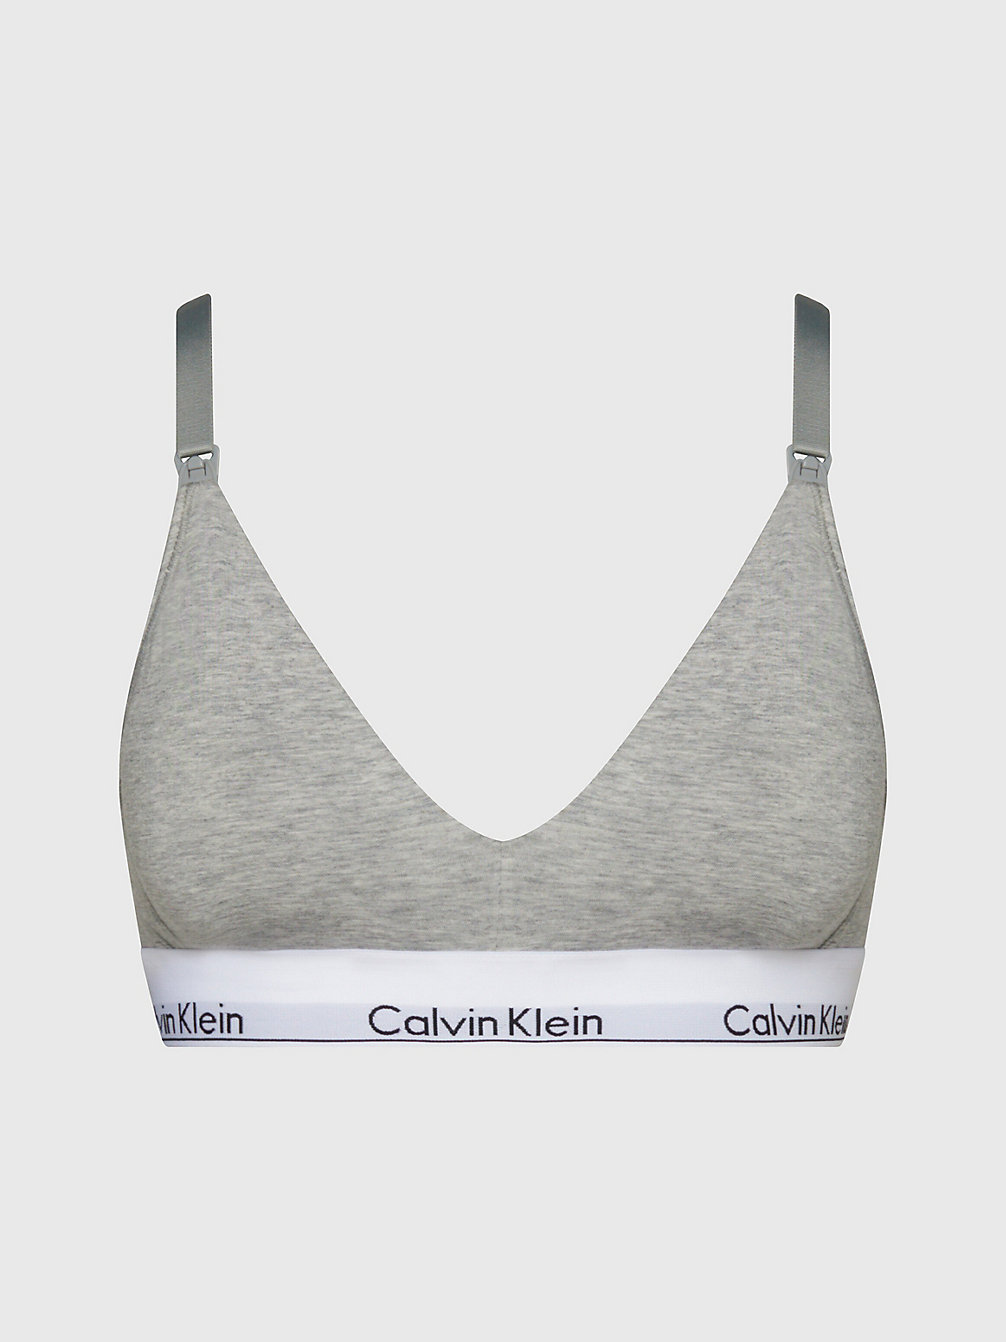 GREY HEATHER Maternity Bra - Modern Cotton undefined women Calvin Klein